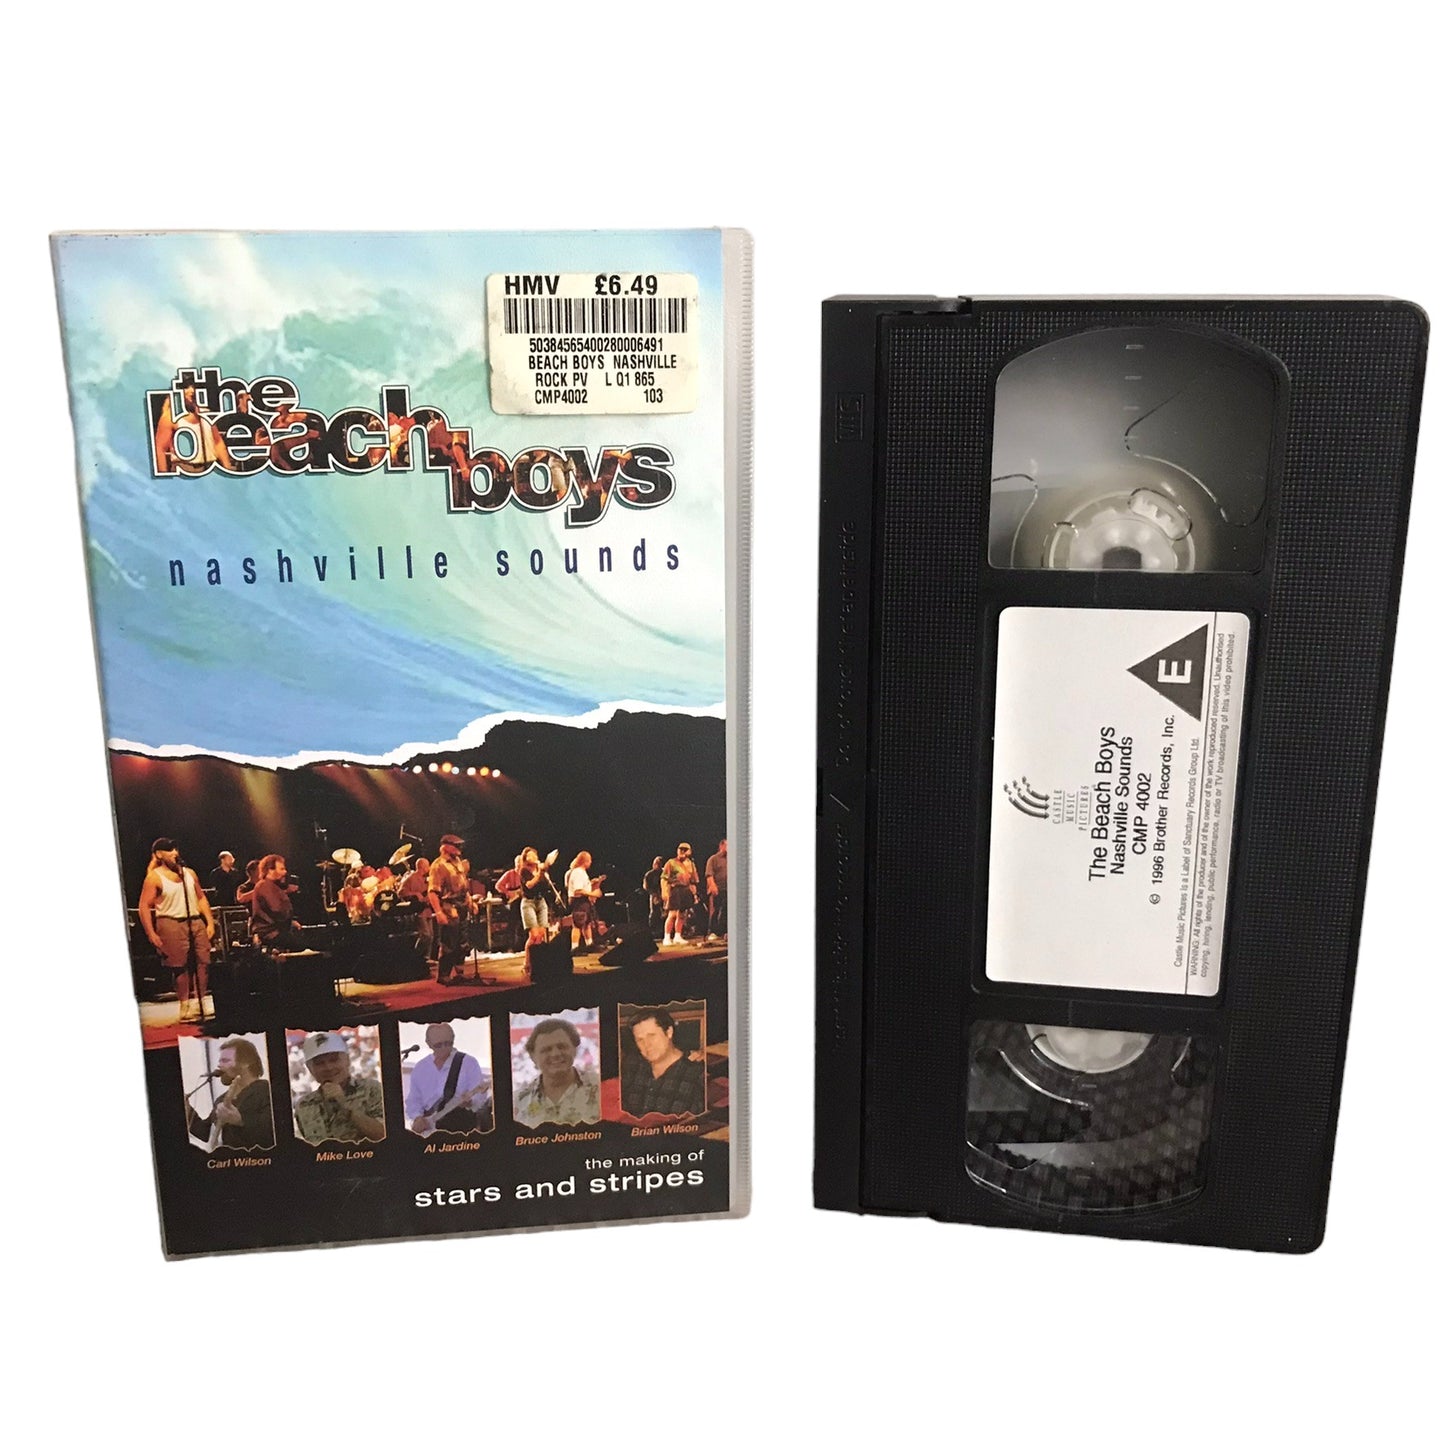 The Beach Boys Nashville Sounds - James House - Castle Music Pictures - Music - Pal - VHS-